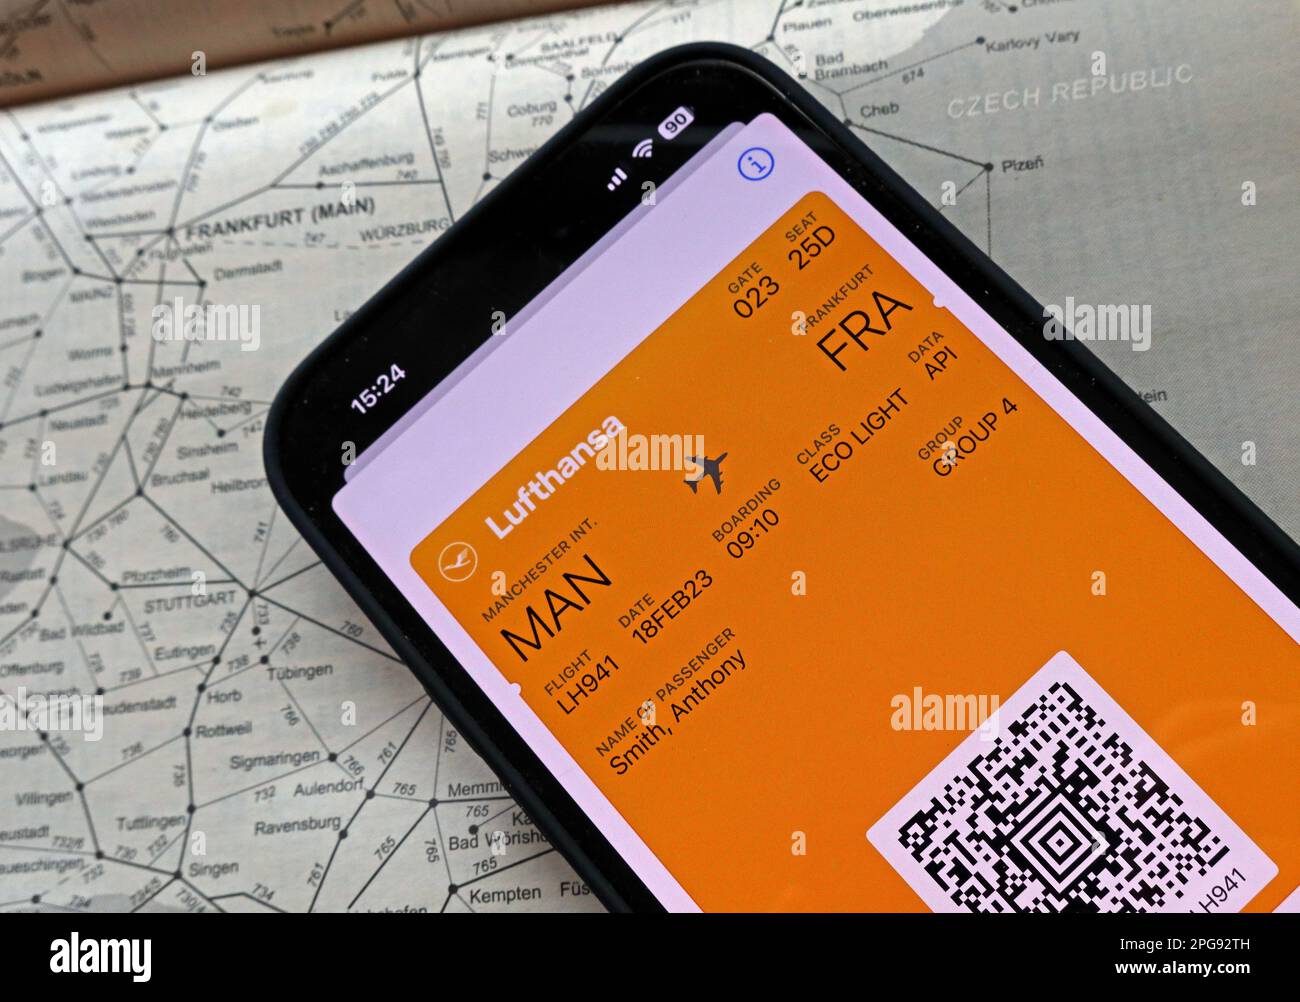 Flugzeugflug digitale Bordkarte MAN-FRA auf Handy, mit Lufthansa, und Bahnkarte von Frankfurt, Deutschland Stockfoto